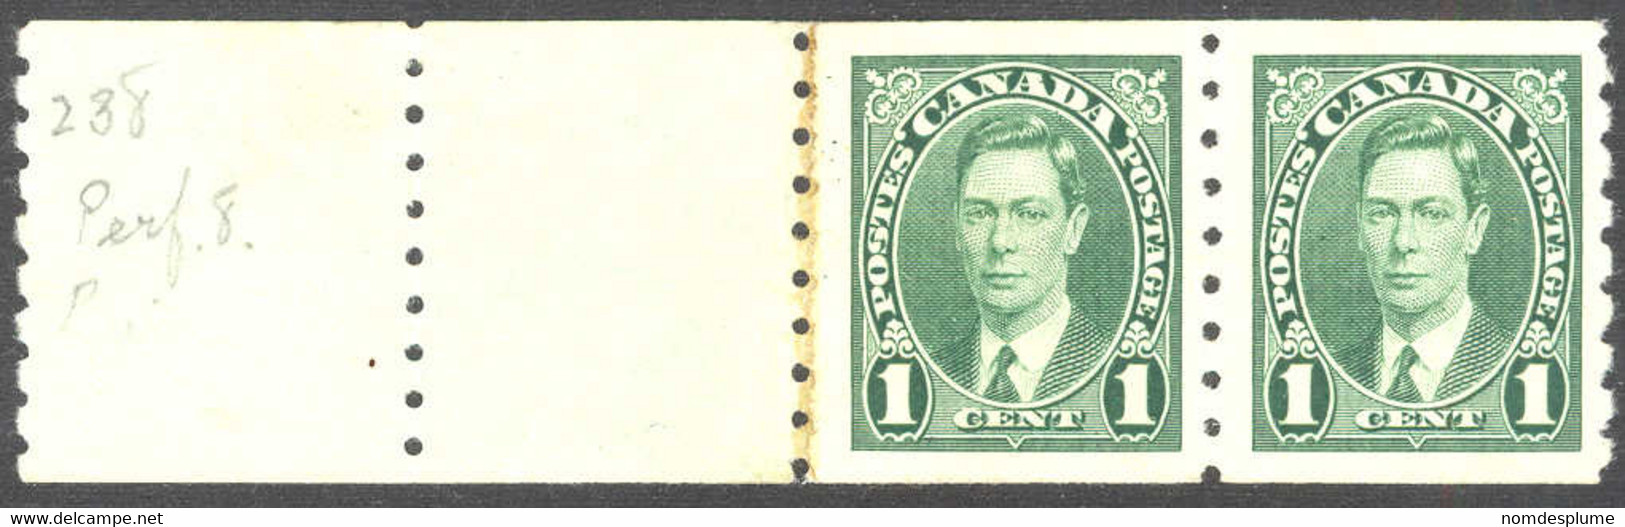 1433) Canada 238 George V Coil Mint 1937 - Rollo De Sellos